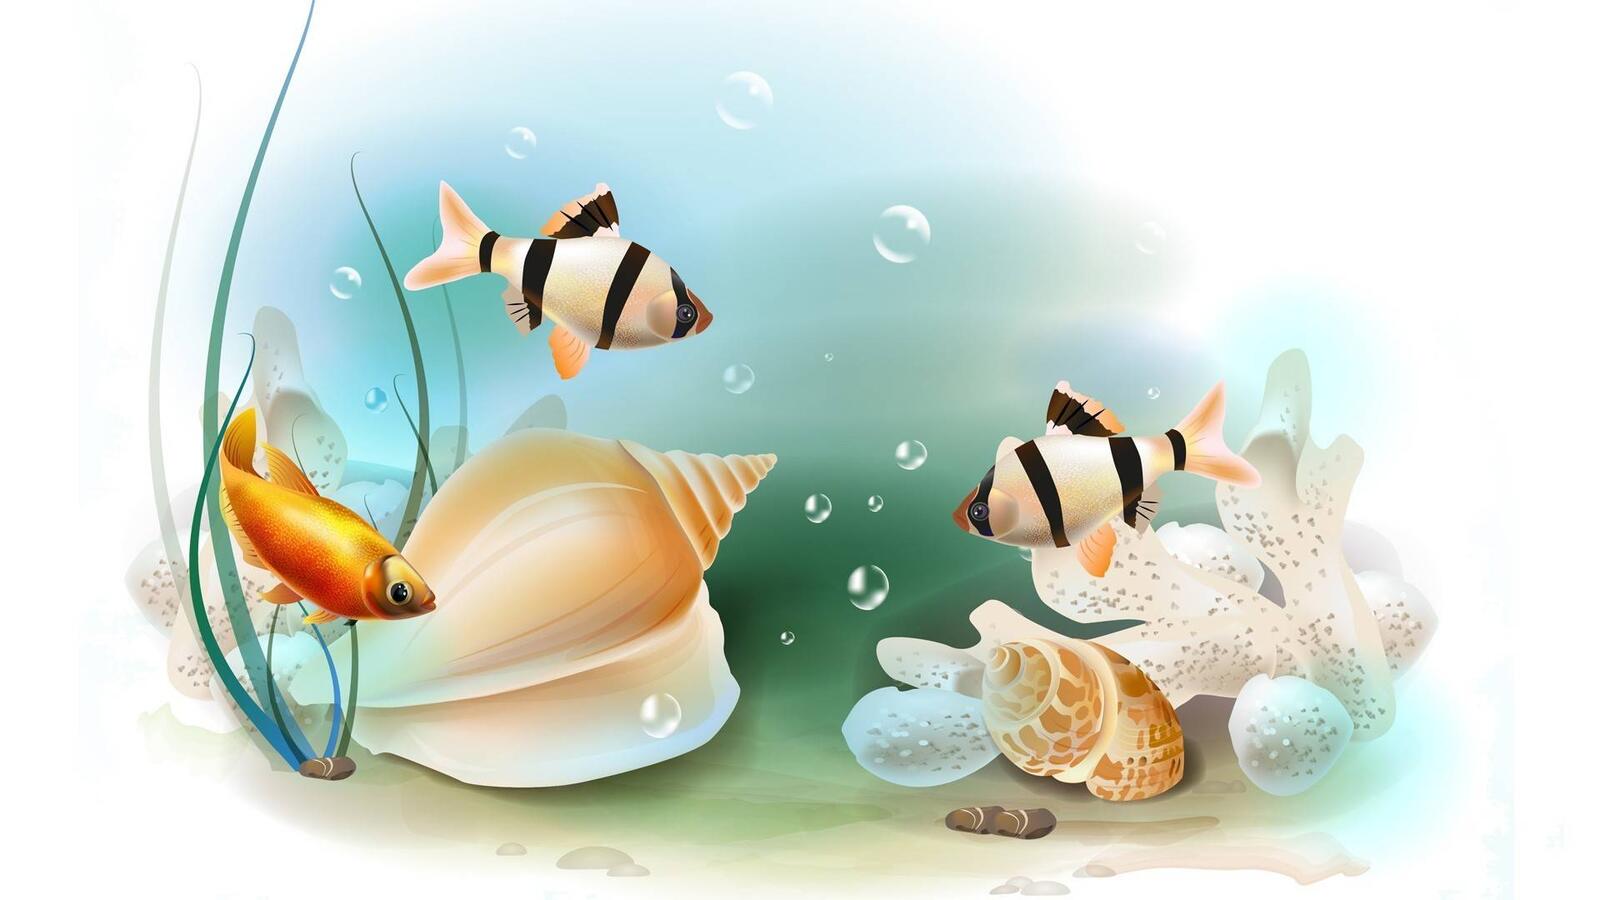 Wallpapers aquarium fish barbs on the desktop